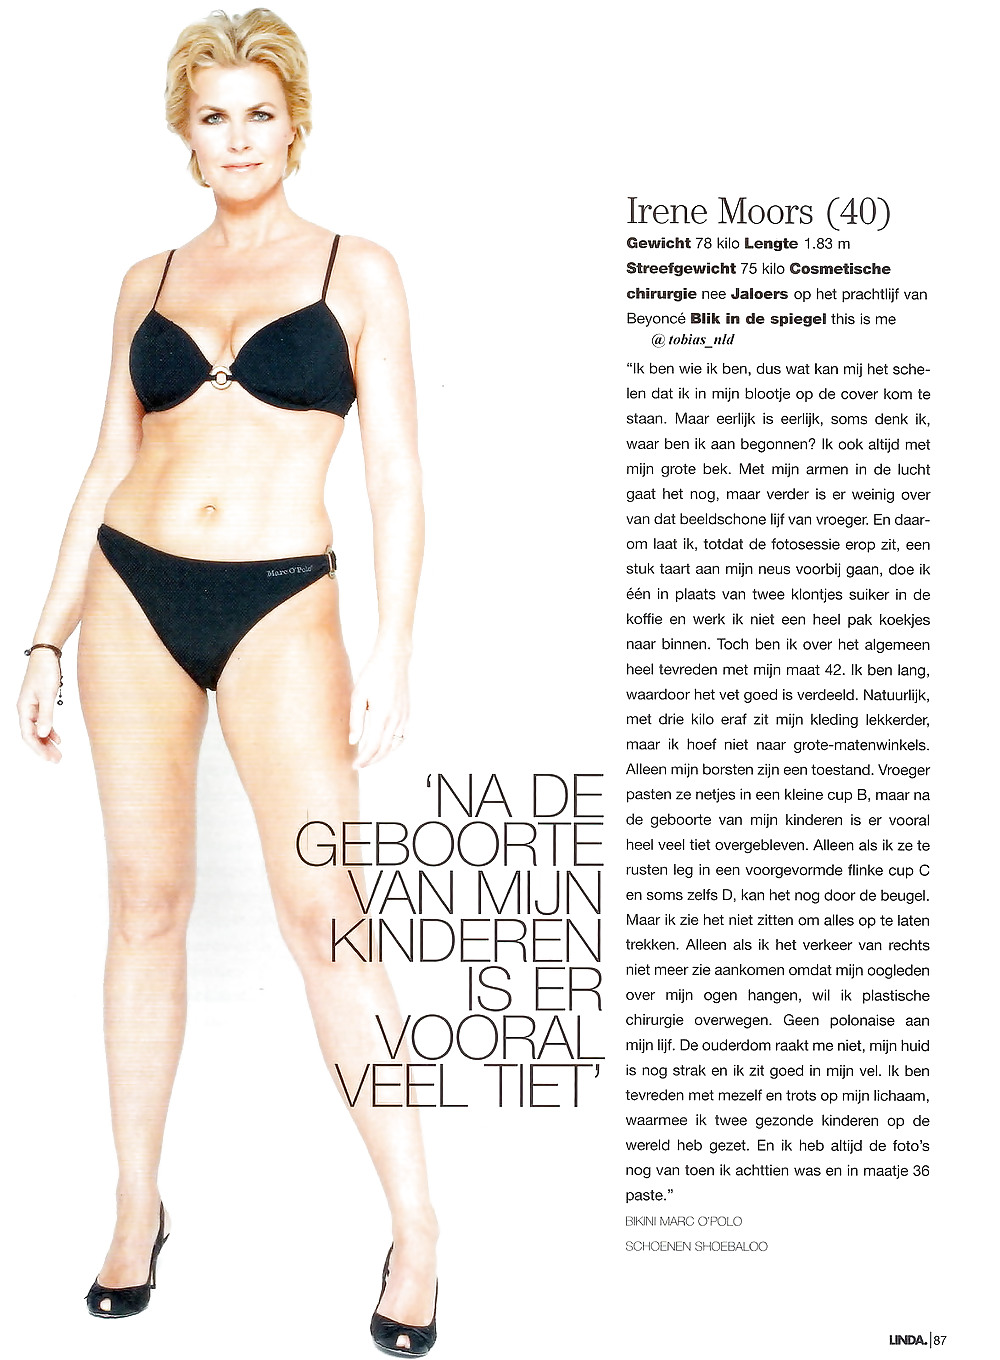 Dutch celeb Milf, Irene moors #24138260